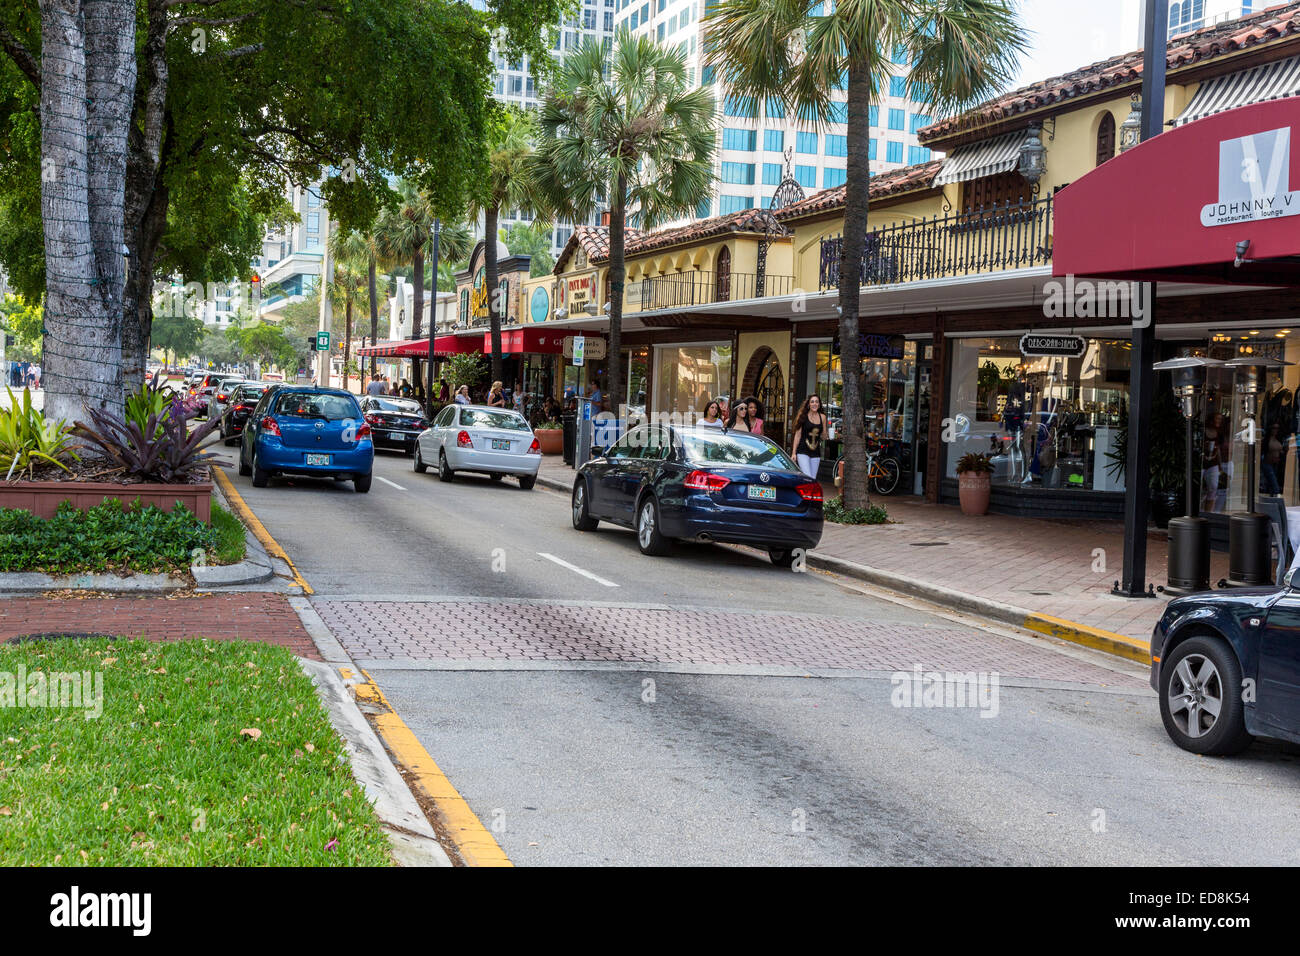 Ft. Lauderdale, en Floride. Boutiques sur Las Olas Boulevard. Scène de rue, les voitures, les magasins, les gens. Banque D'Images